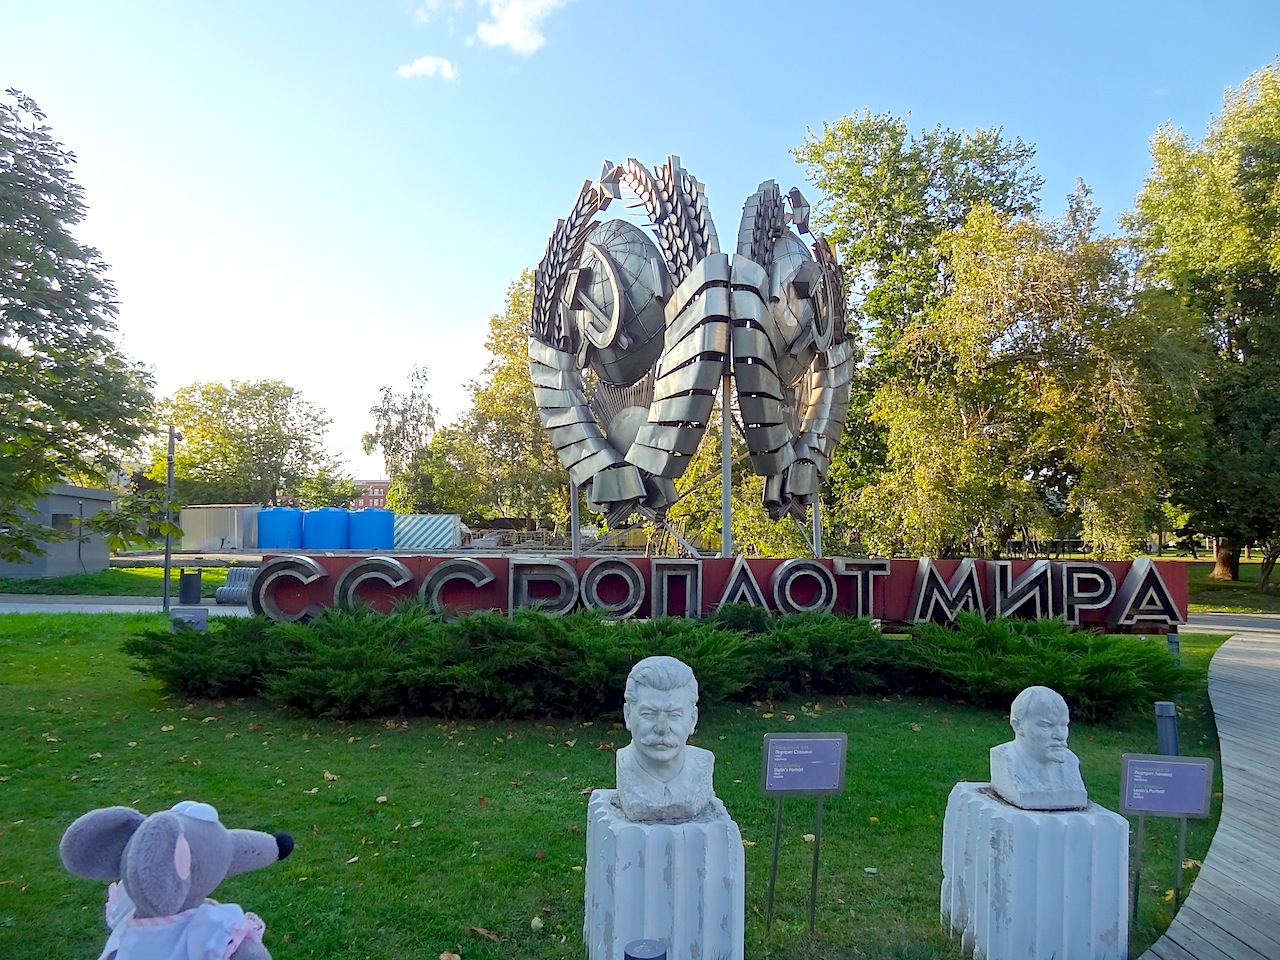 Moscou cimetiere de sculptures